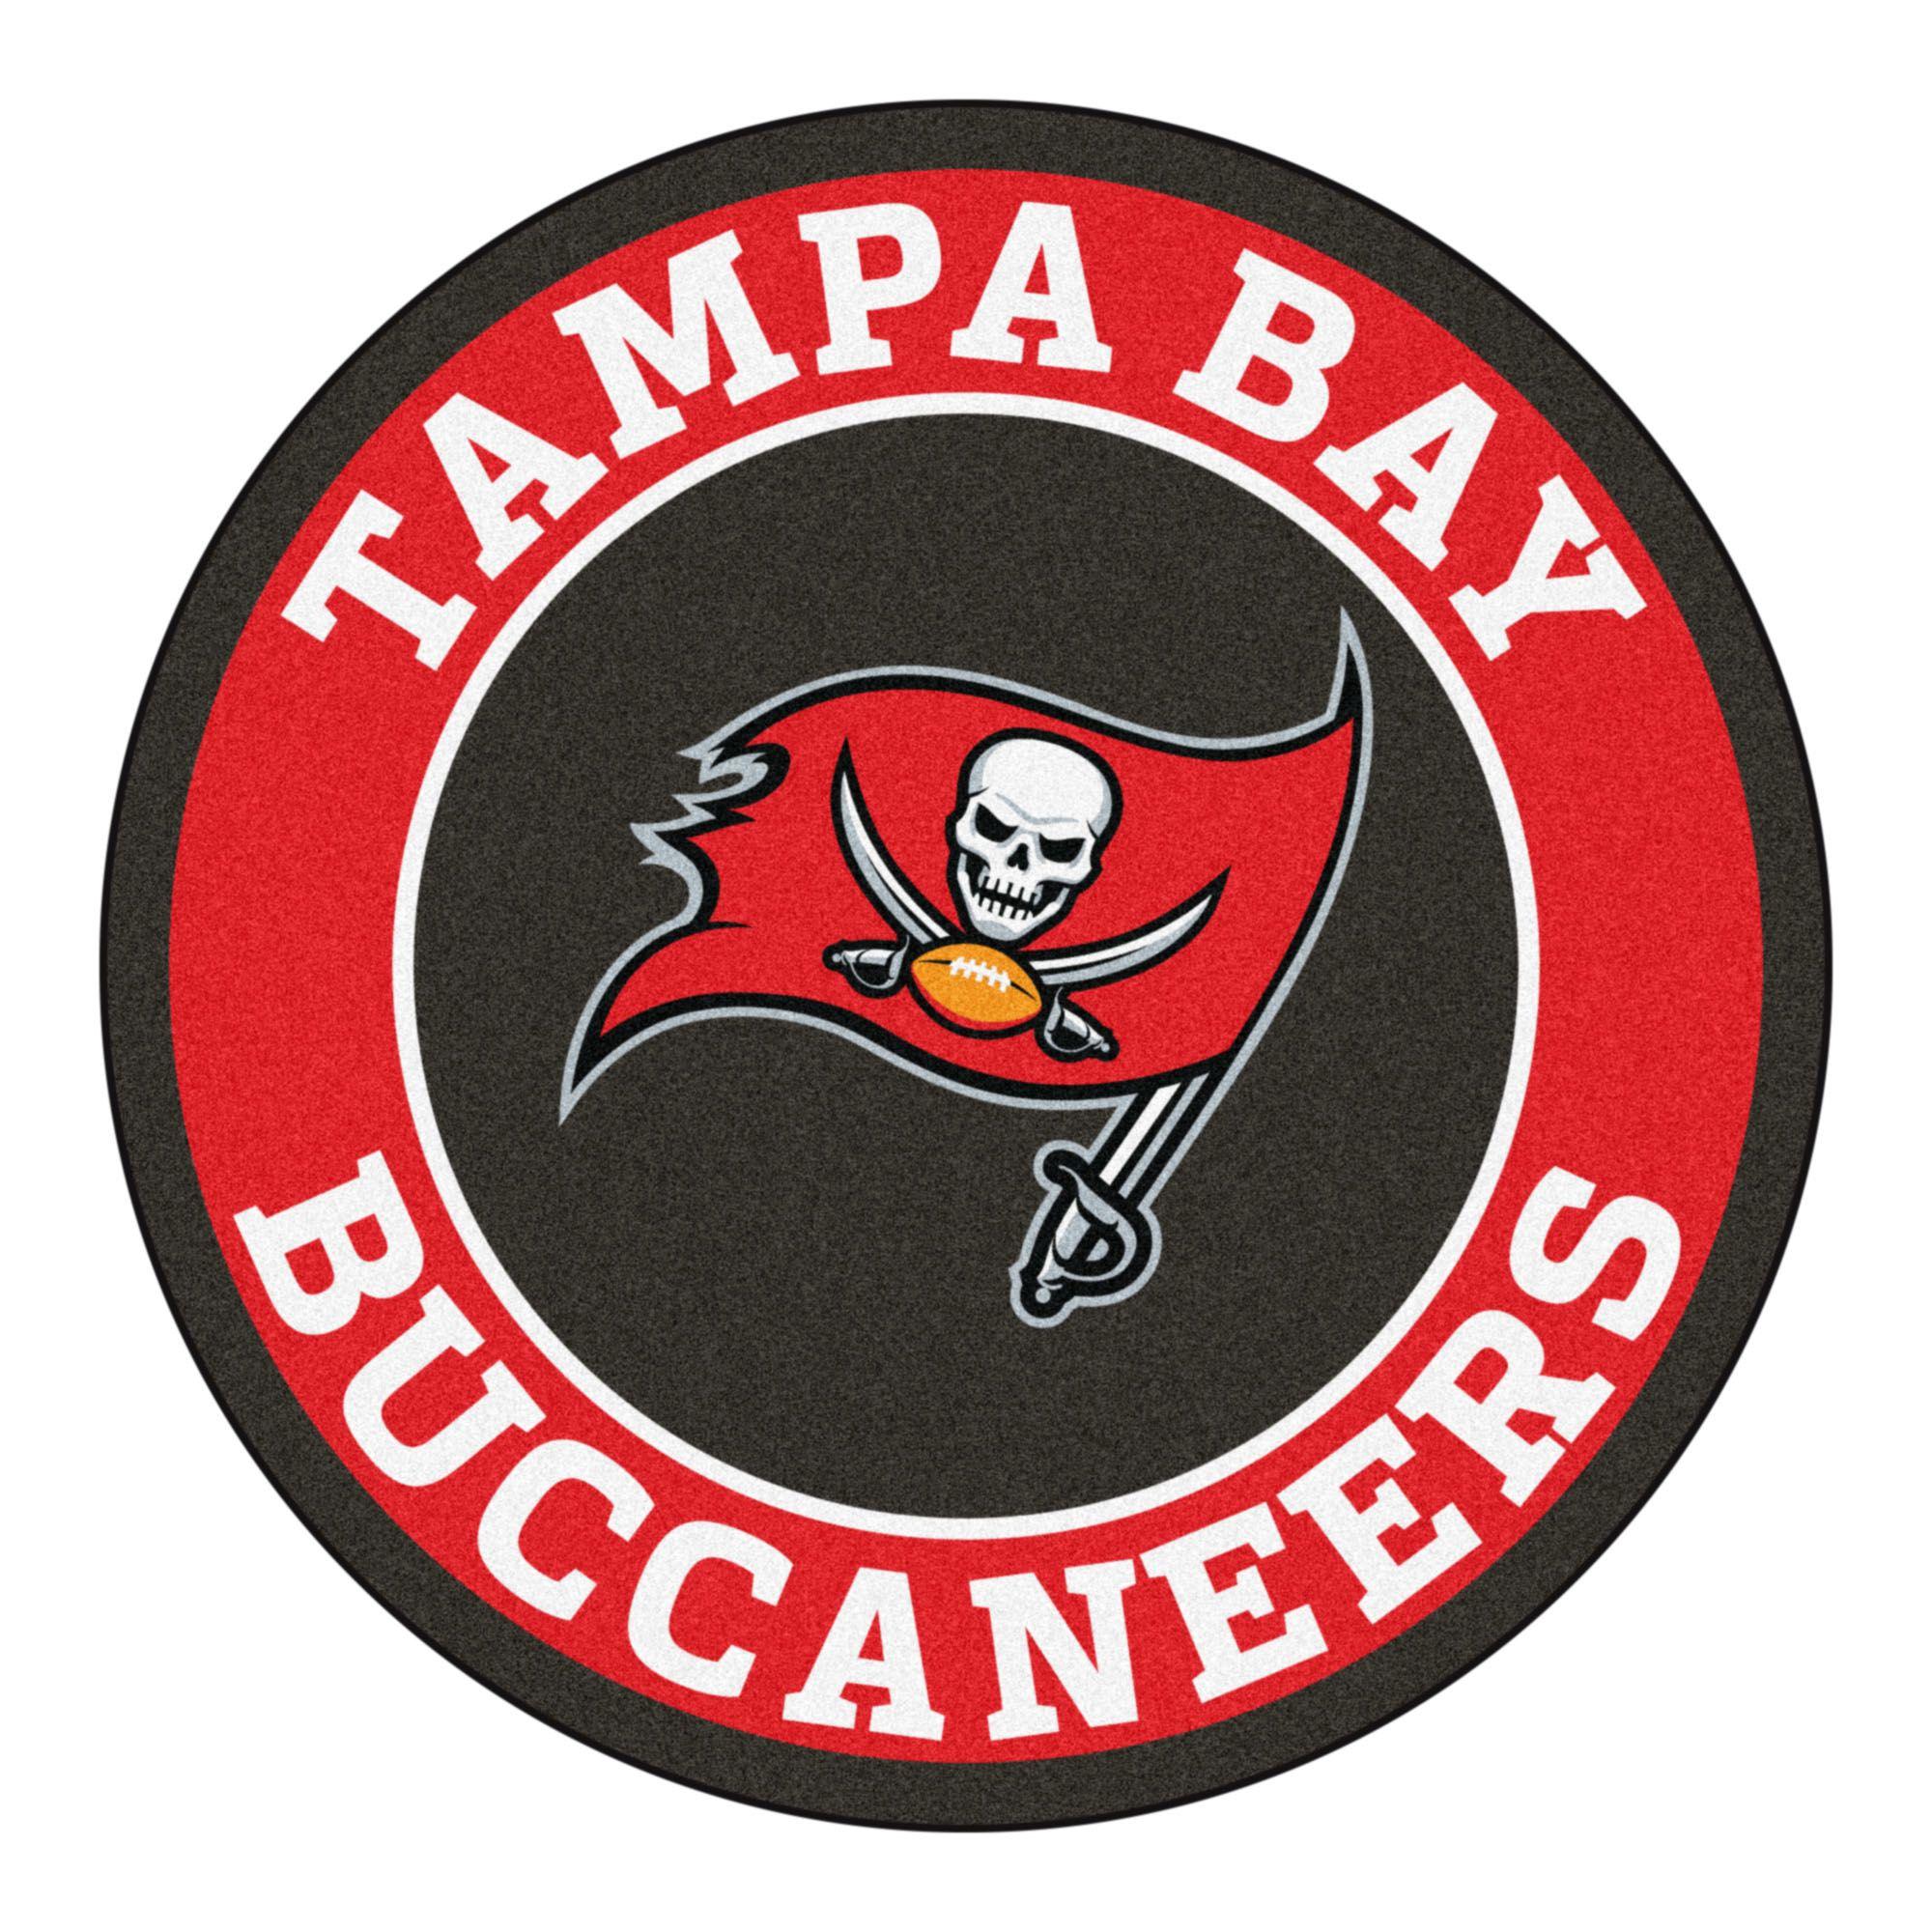 NFL Buccaneers Logo - TM Verified Presale Codes For Tampa Bay Buccaneers Individual Game